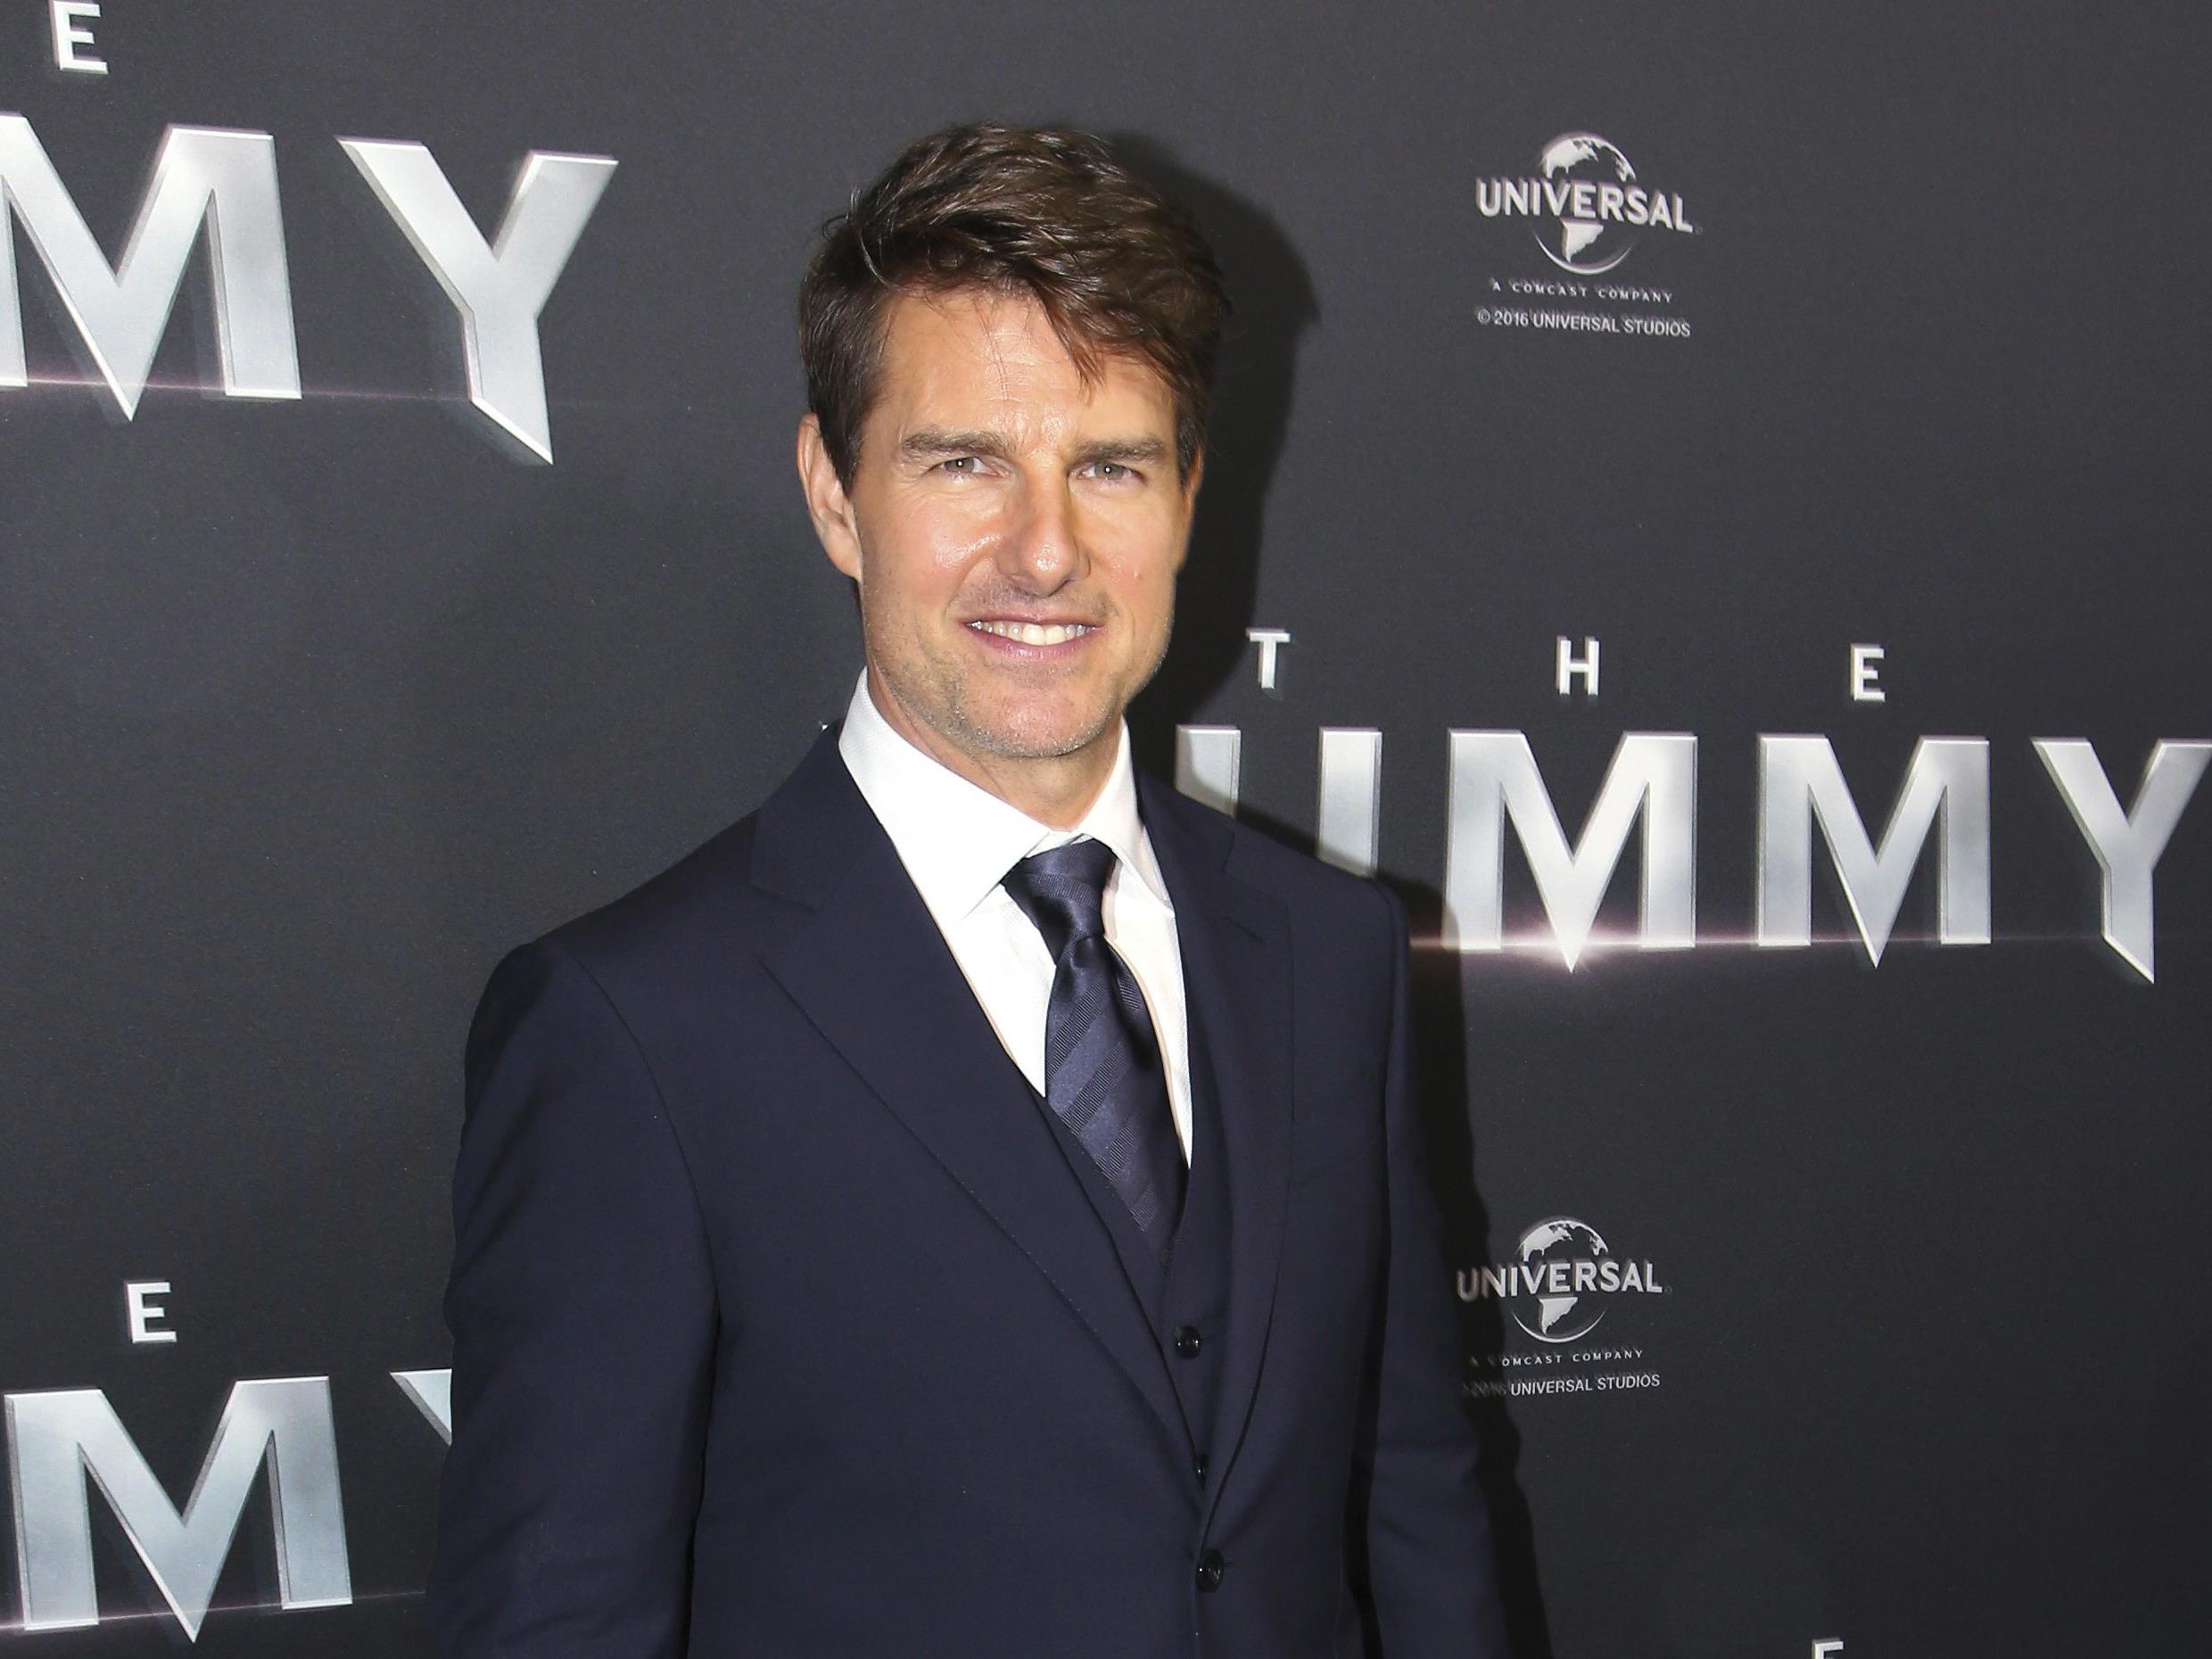 Tom Cruise kündigt "Top Gun 2" an.